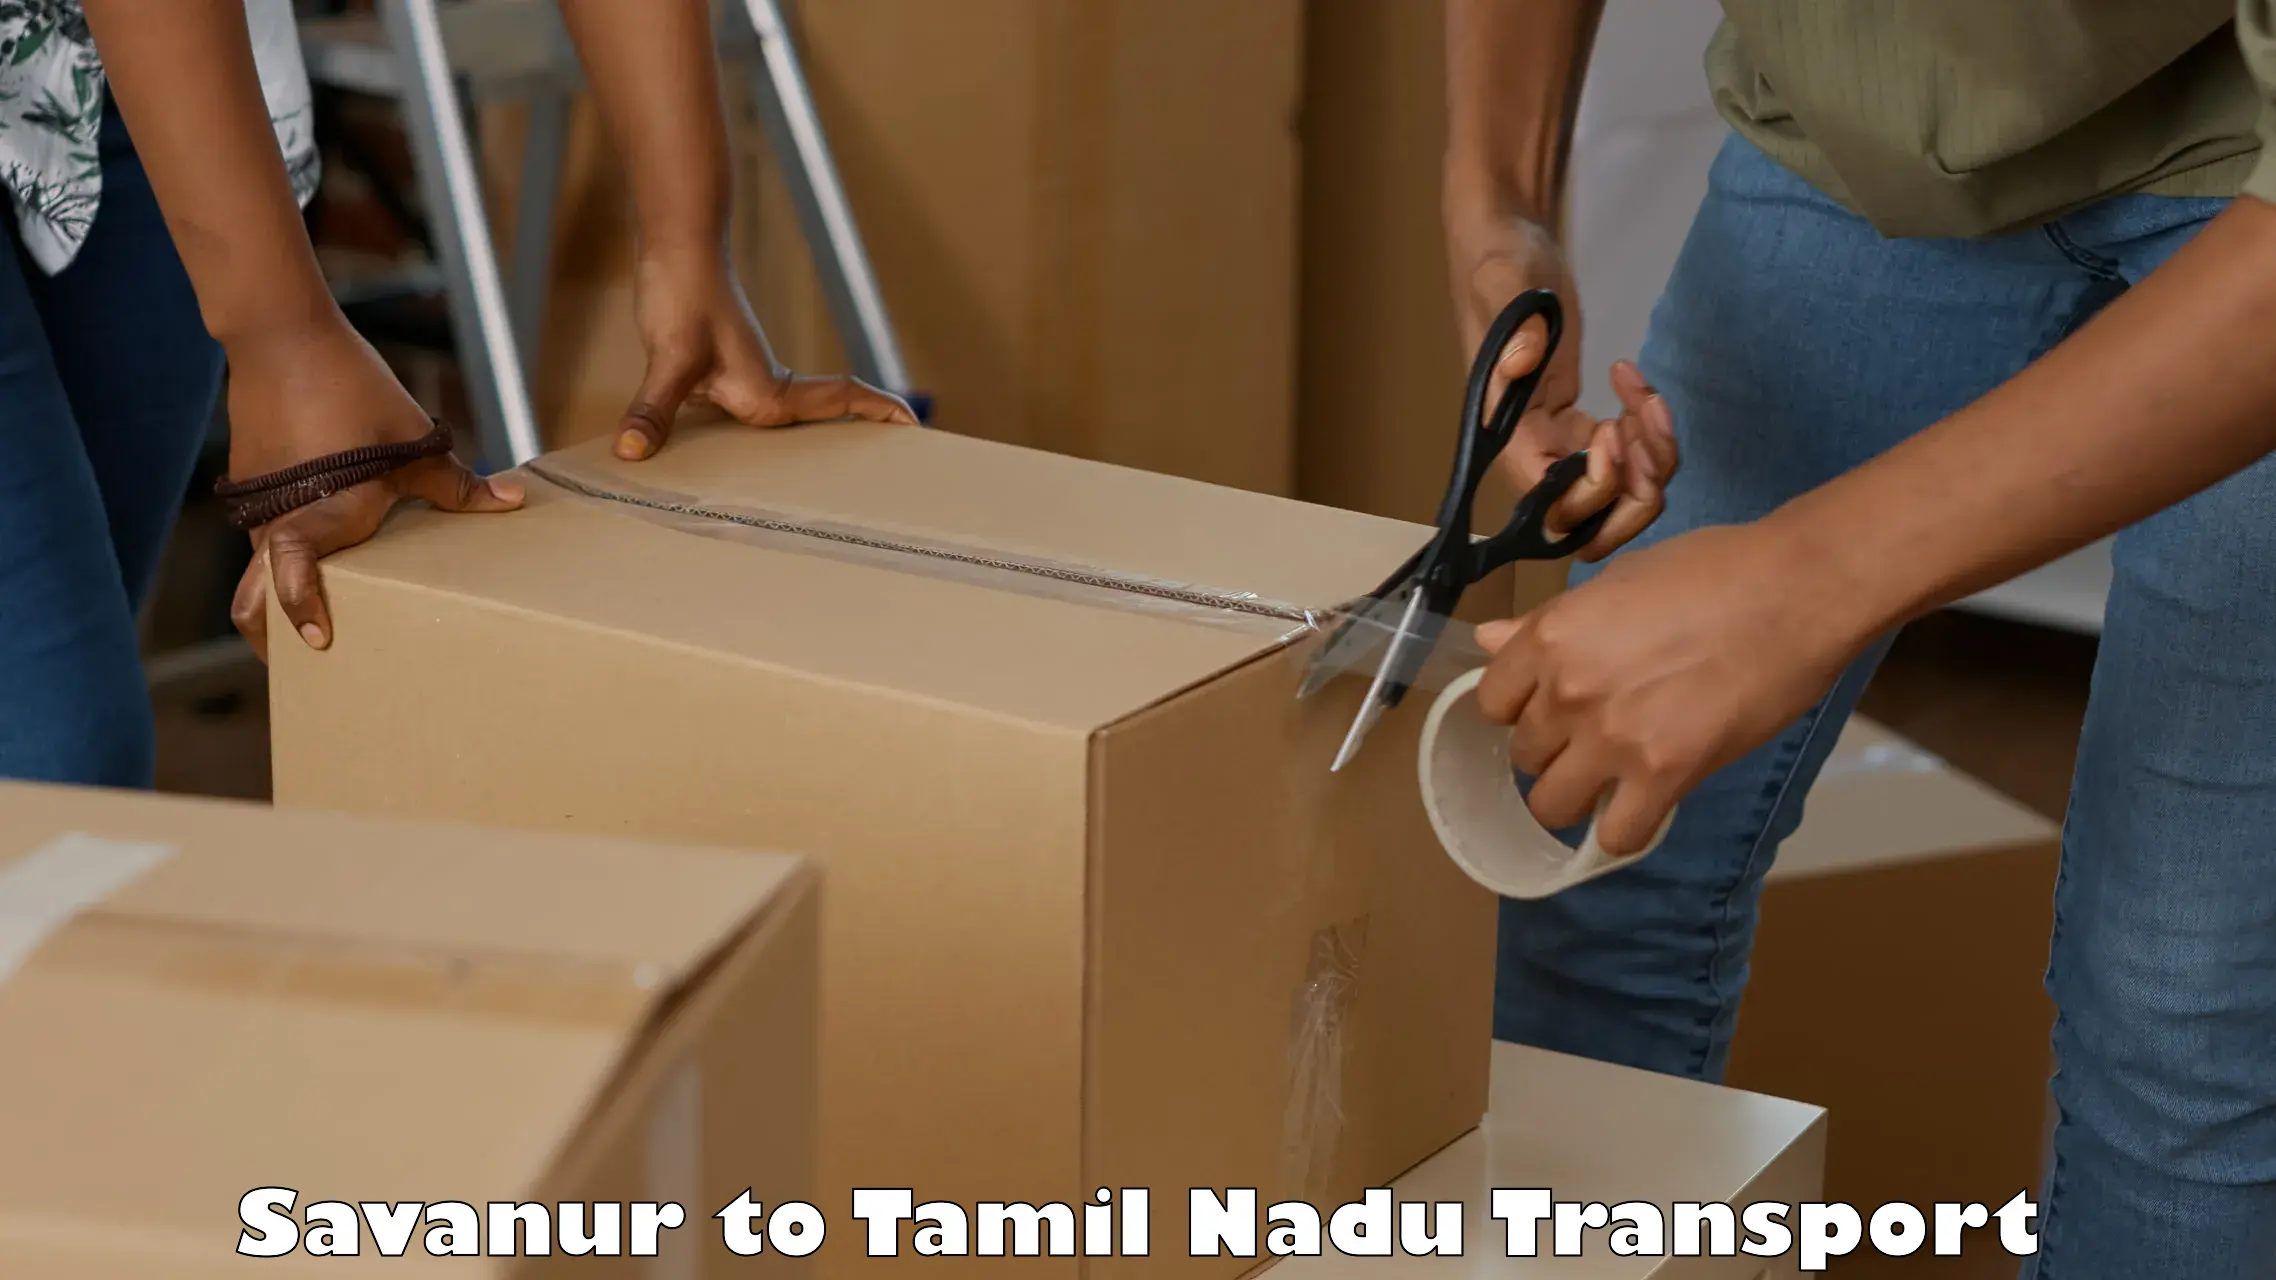 Nearest transport service Savanur to Thiruvadanai